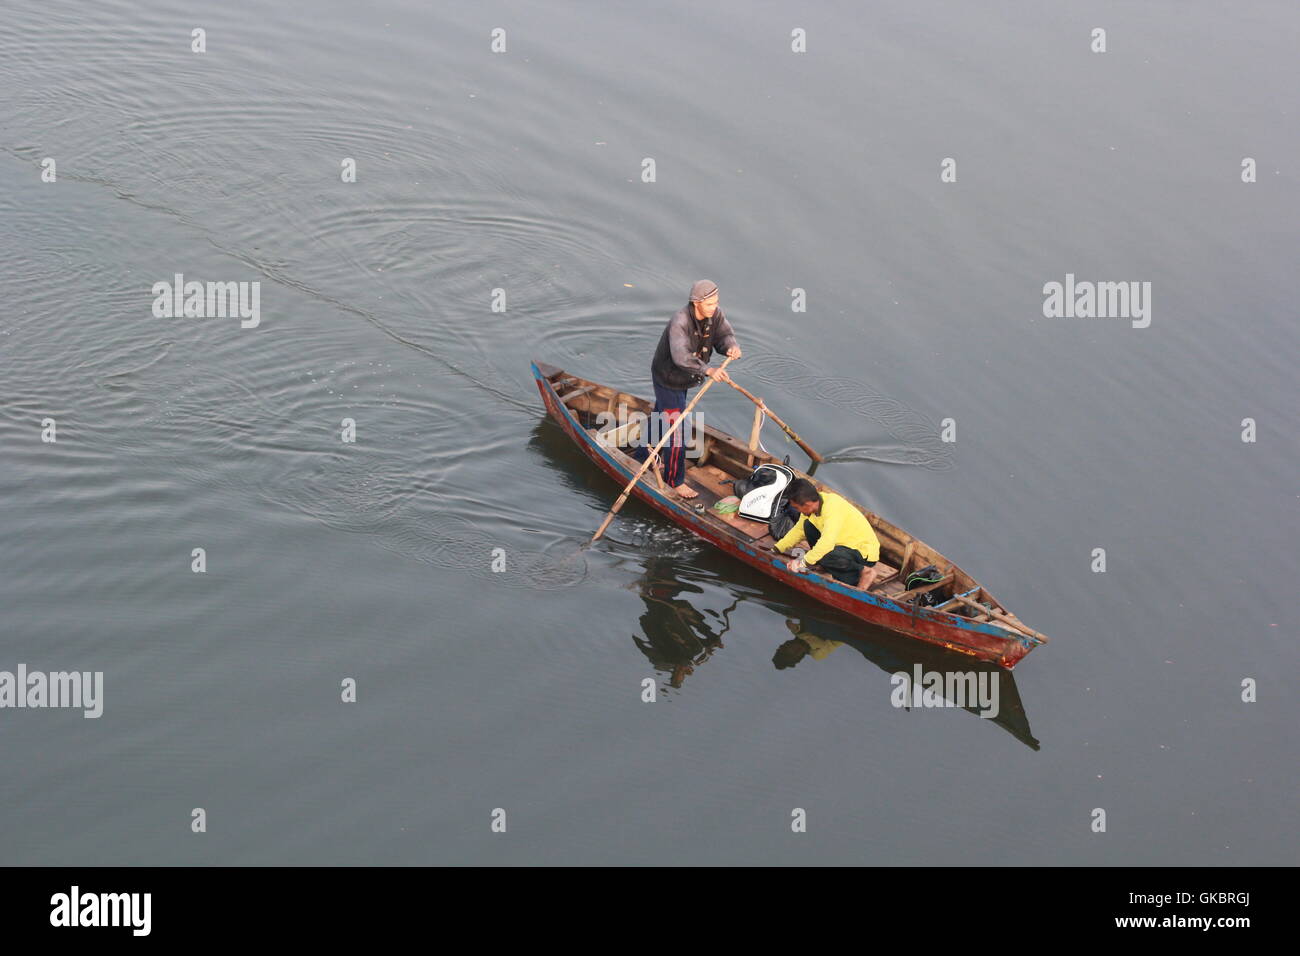 Fisherman in Bintan, Indonesia. Photo by Yuli Seperi/Alamy Stock Photo